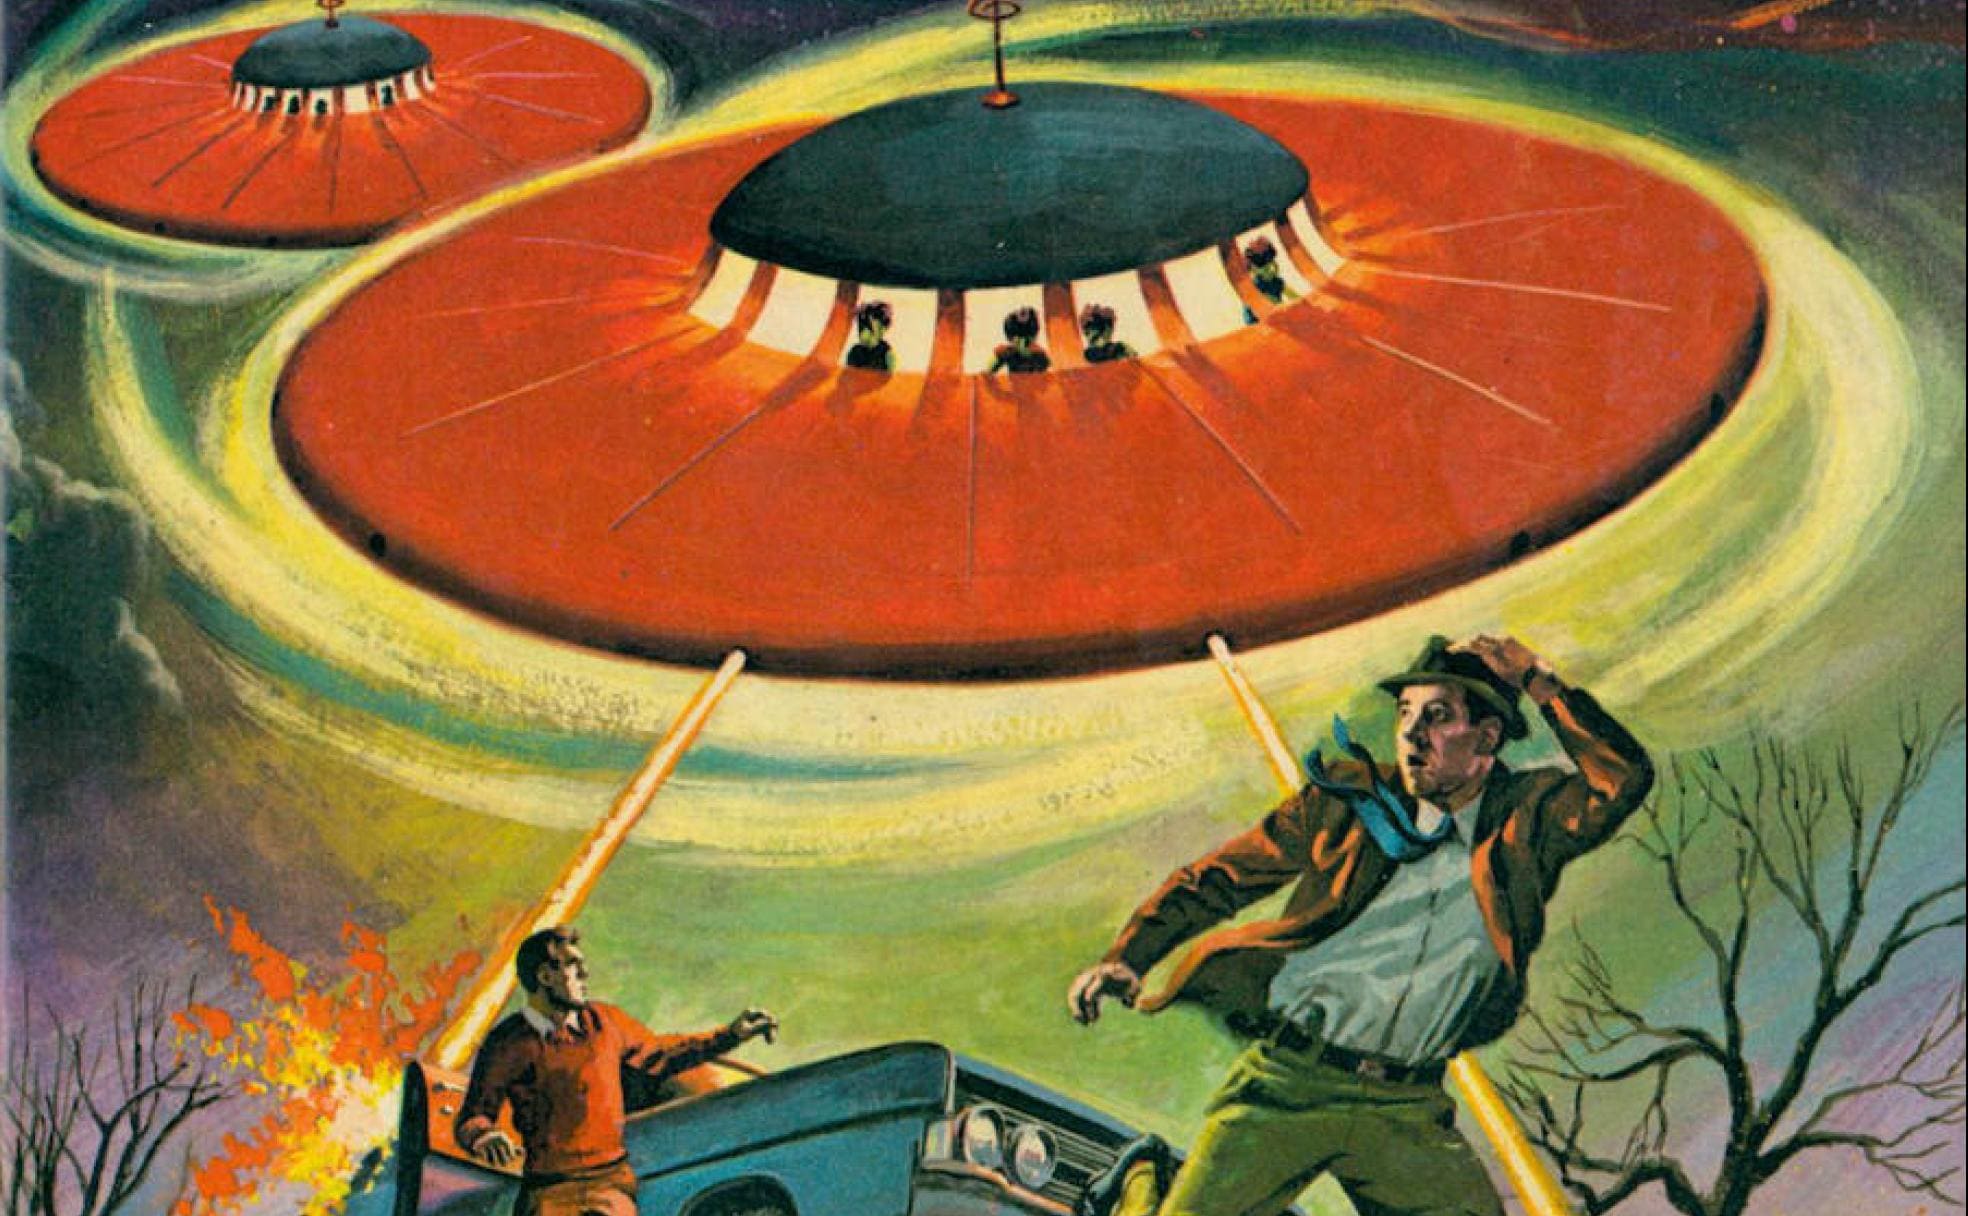 Ilustración de portada del número 1 del cómic estadounidense 'Ufo flying saucers' (1968). 